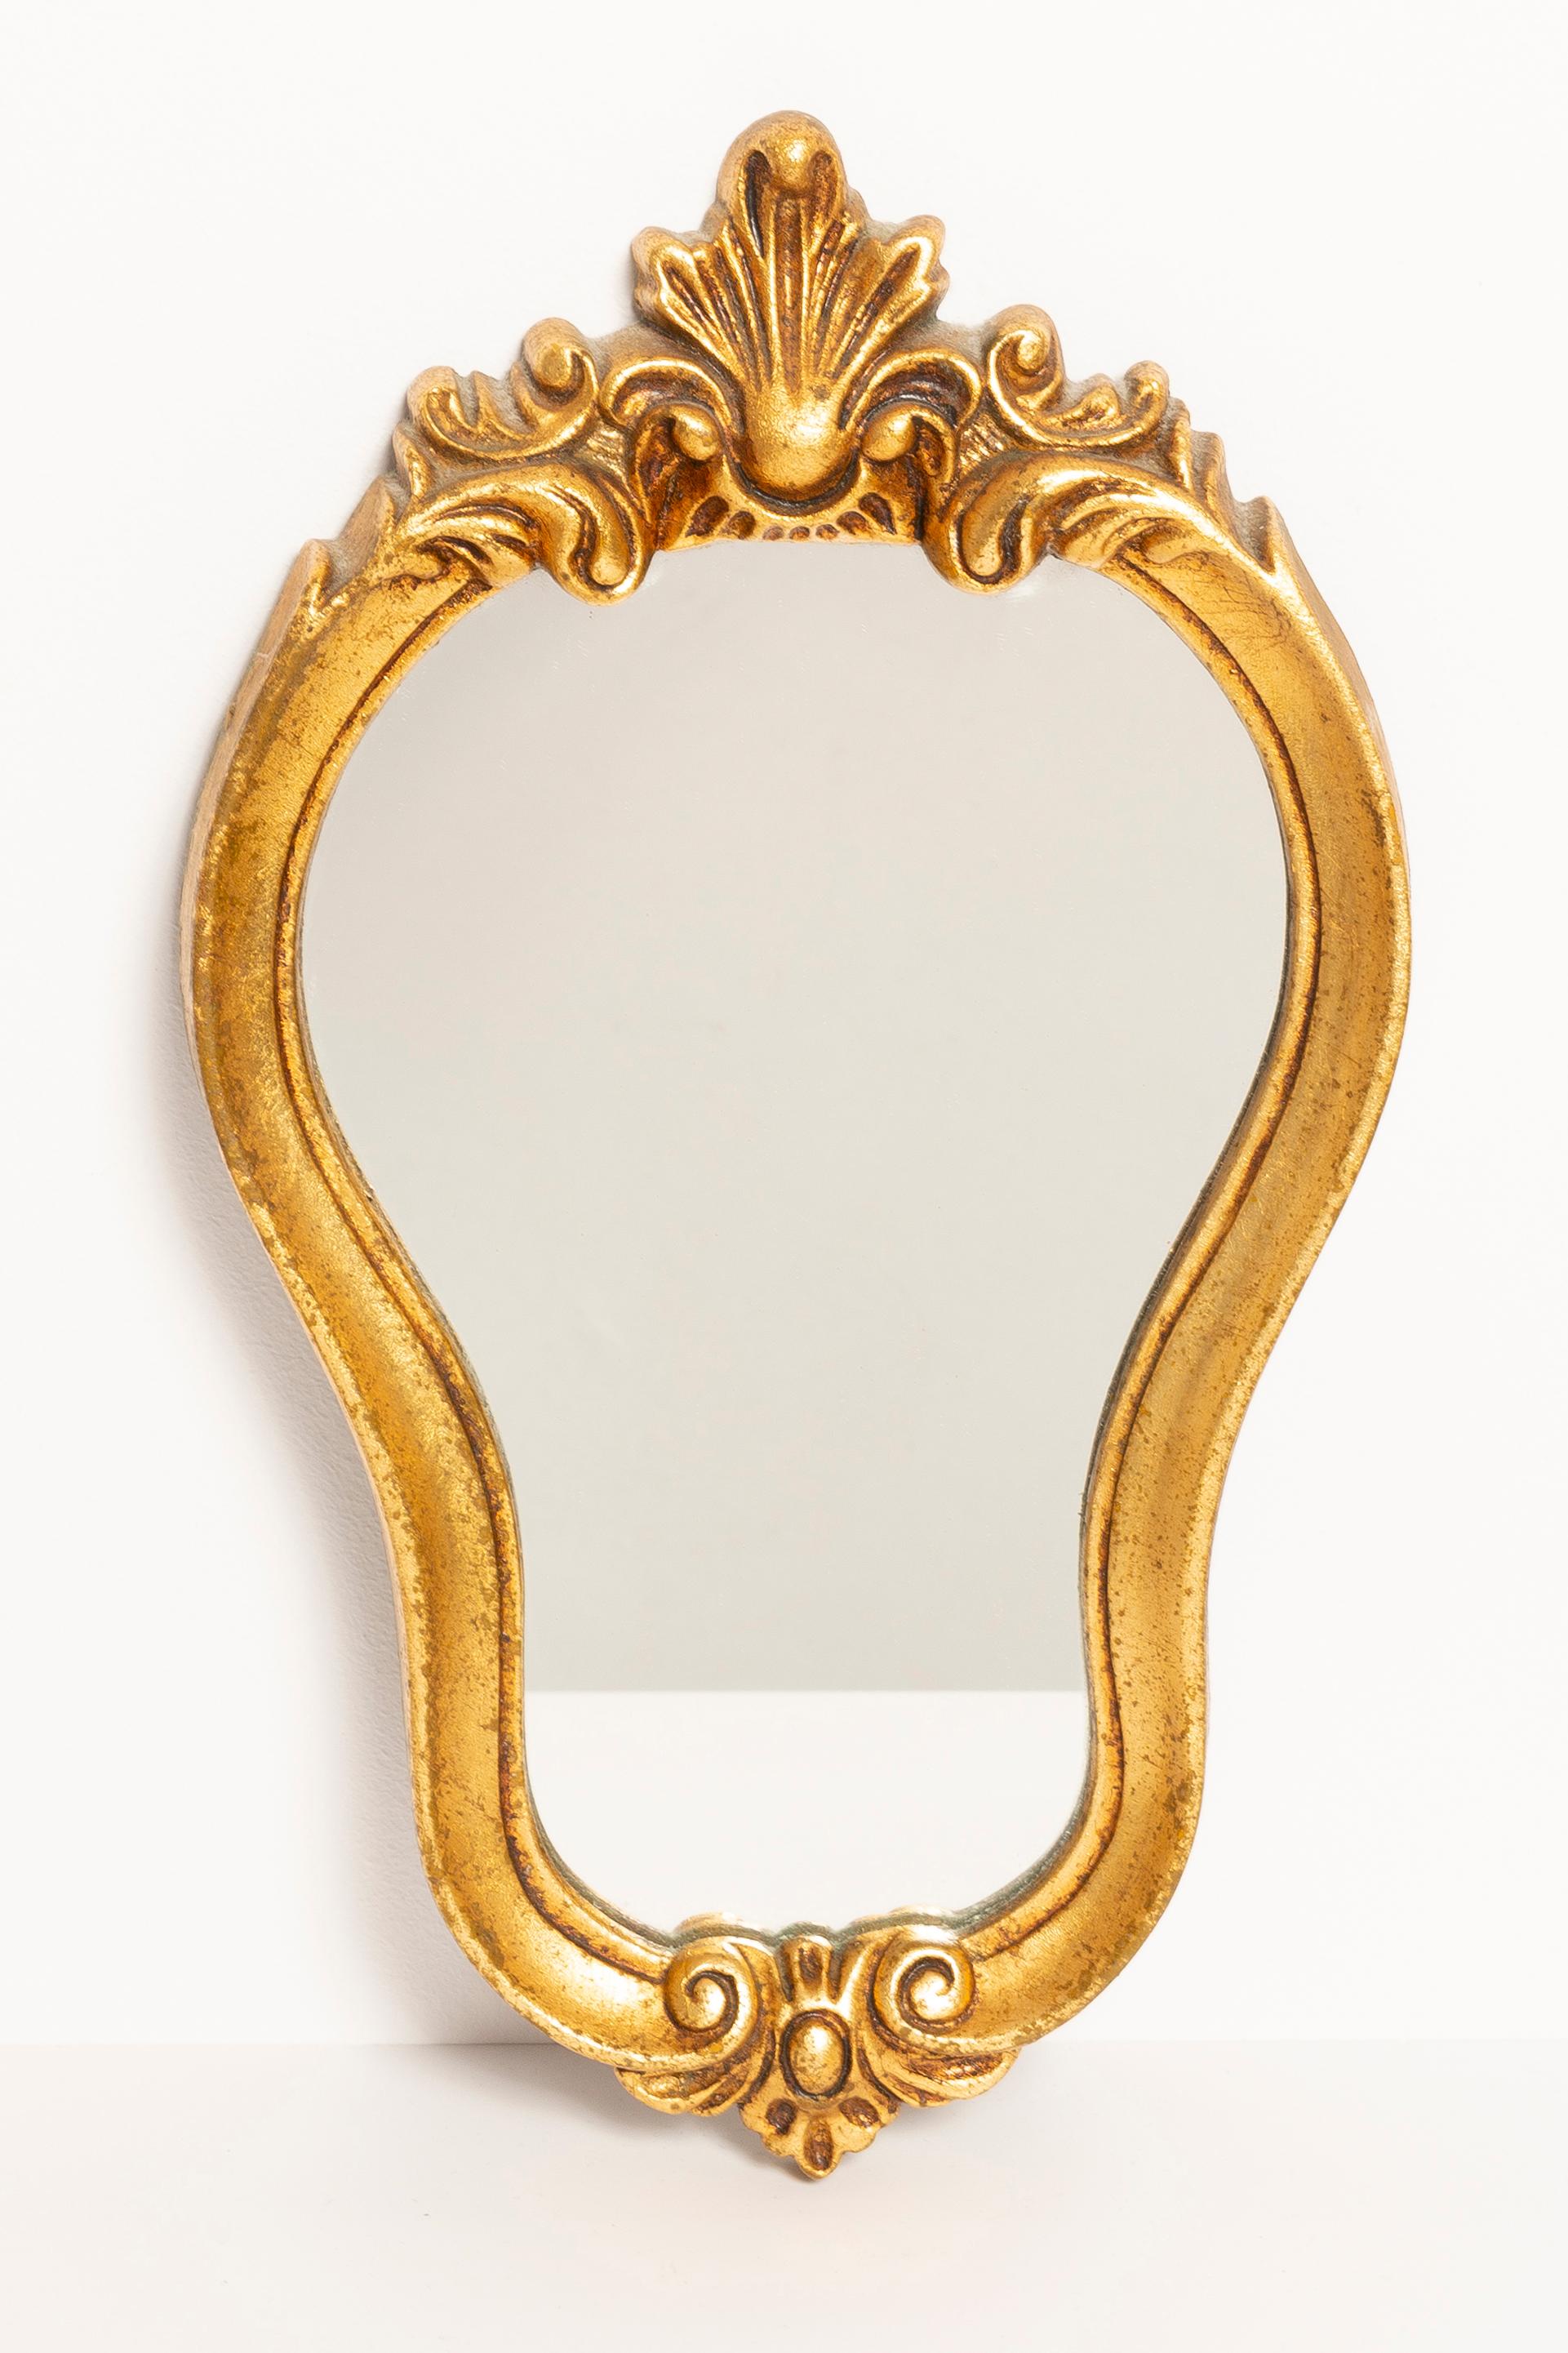 Un beau petit miroir dans un cadre décoratif doré avec des fleurs. Produit dans les années 1960 en Europe/Italie. Le cadre est en bois, peint en peinture bois doré. Le miroir est en très bon état vintage, aucun dommage ou fissure dans le cadre.